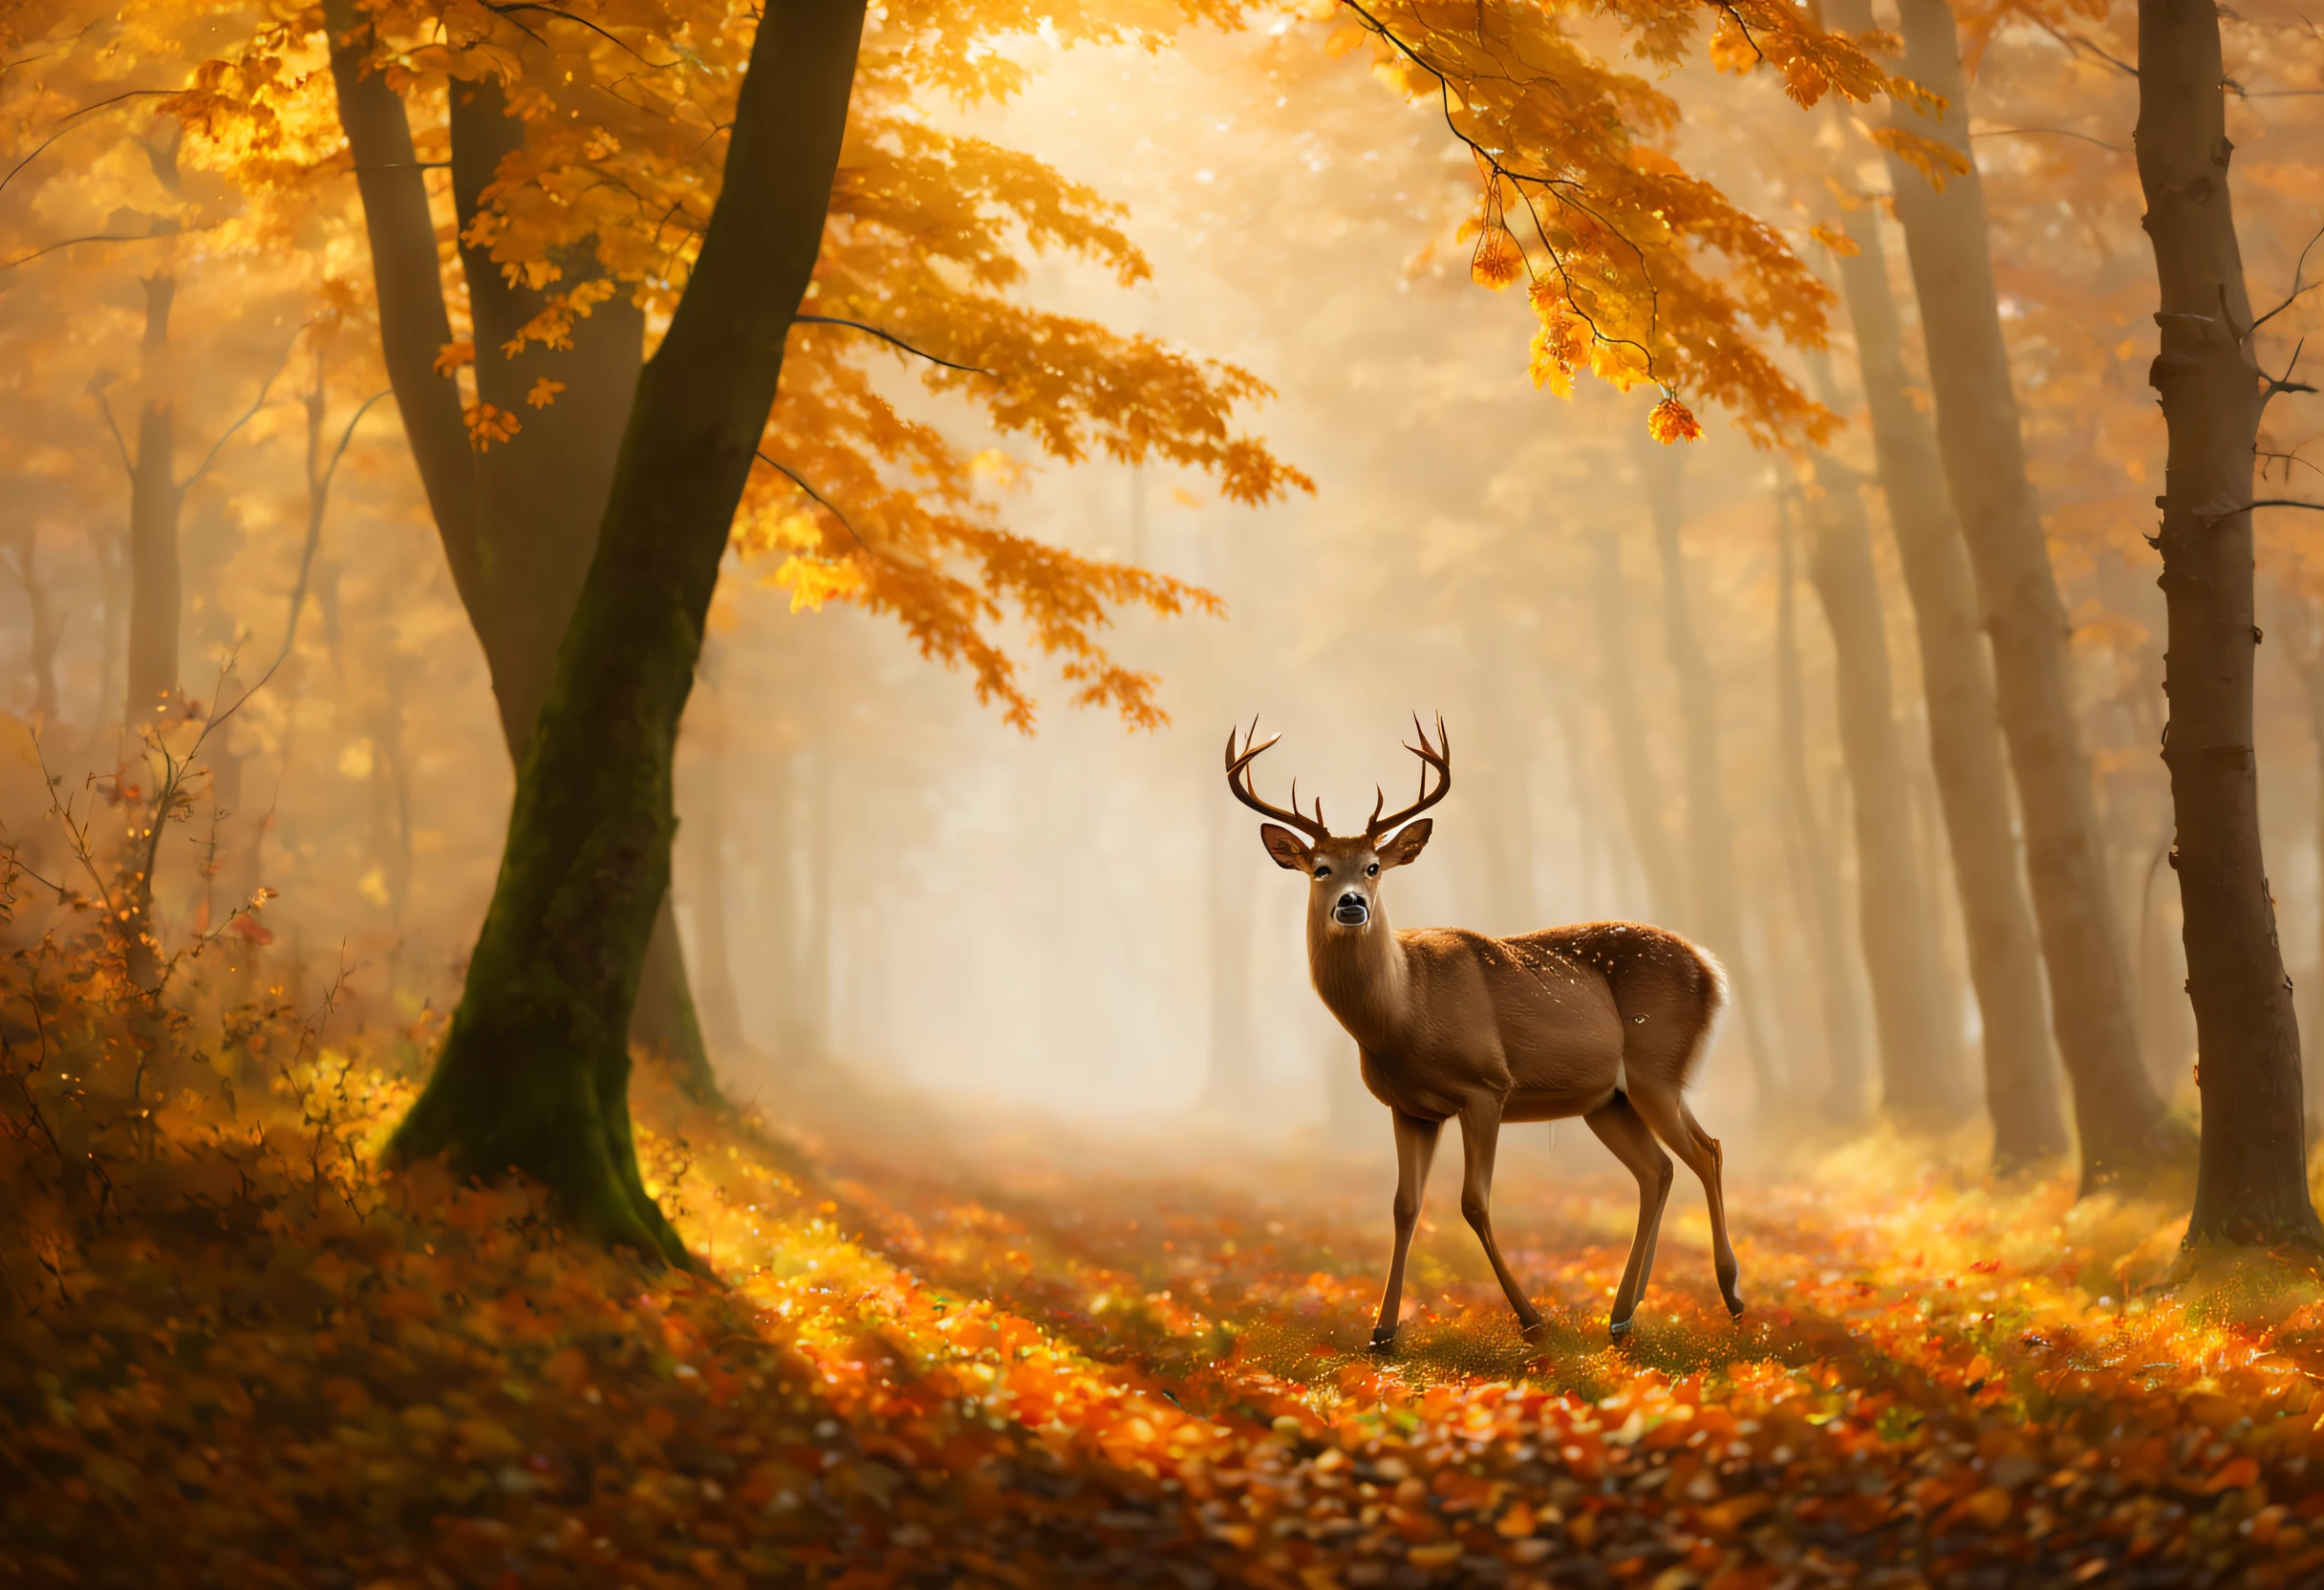 (最好的品質, 4k, 8K, 高解析度, 傑作: 1.2), 超詳細, (實際的, photo實際的, photo實際的: 1.37),秋天的美景, 如梦如幻, 森林里有很多雾, 一隻鹿, 宏伟的获奖形象.